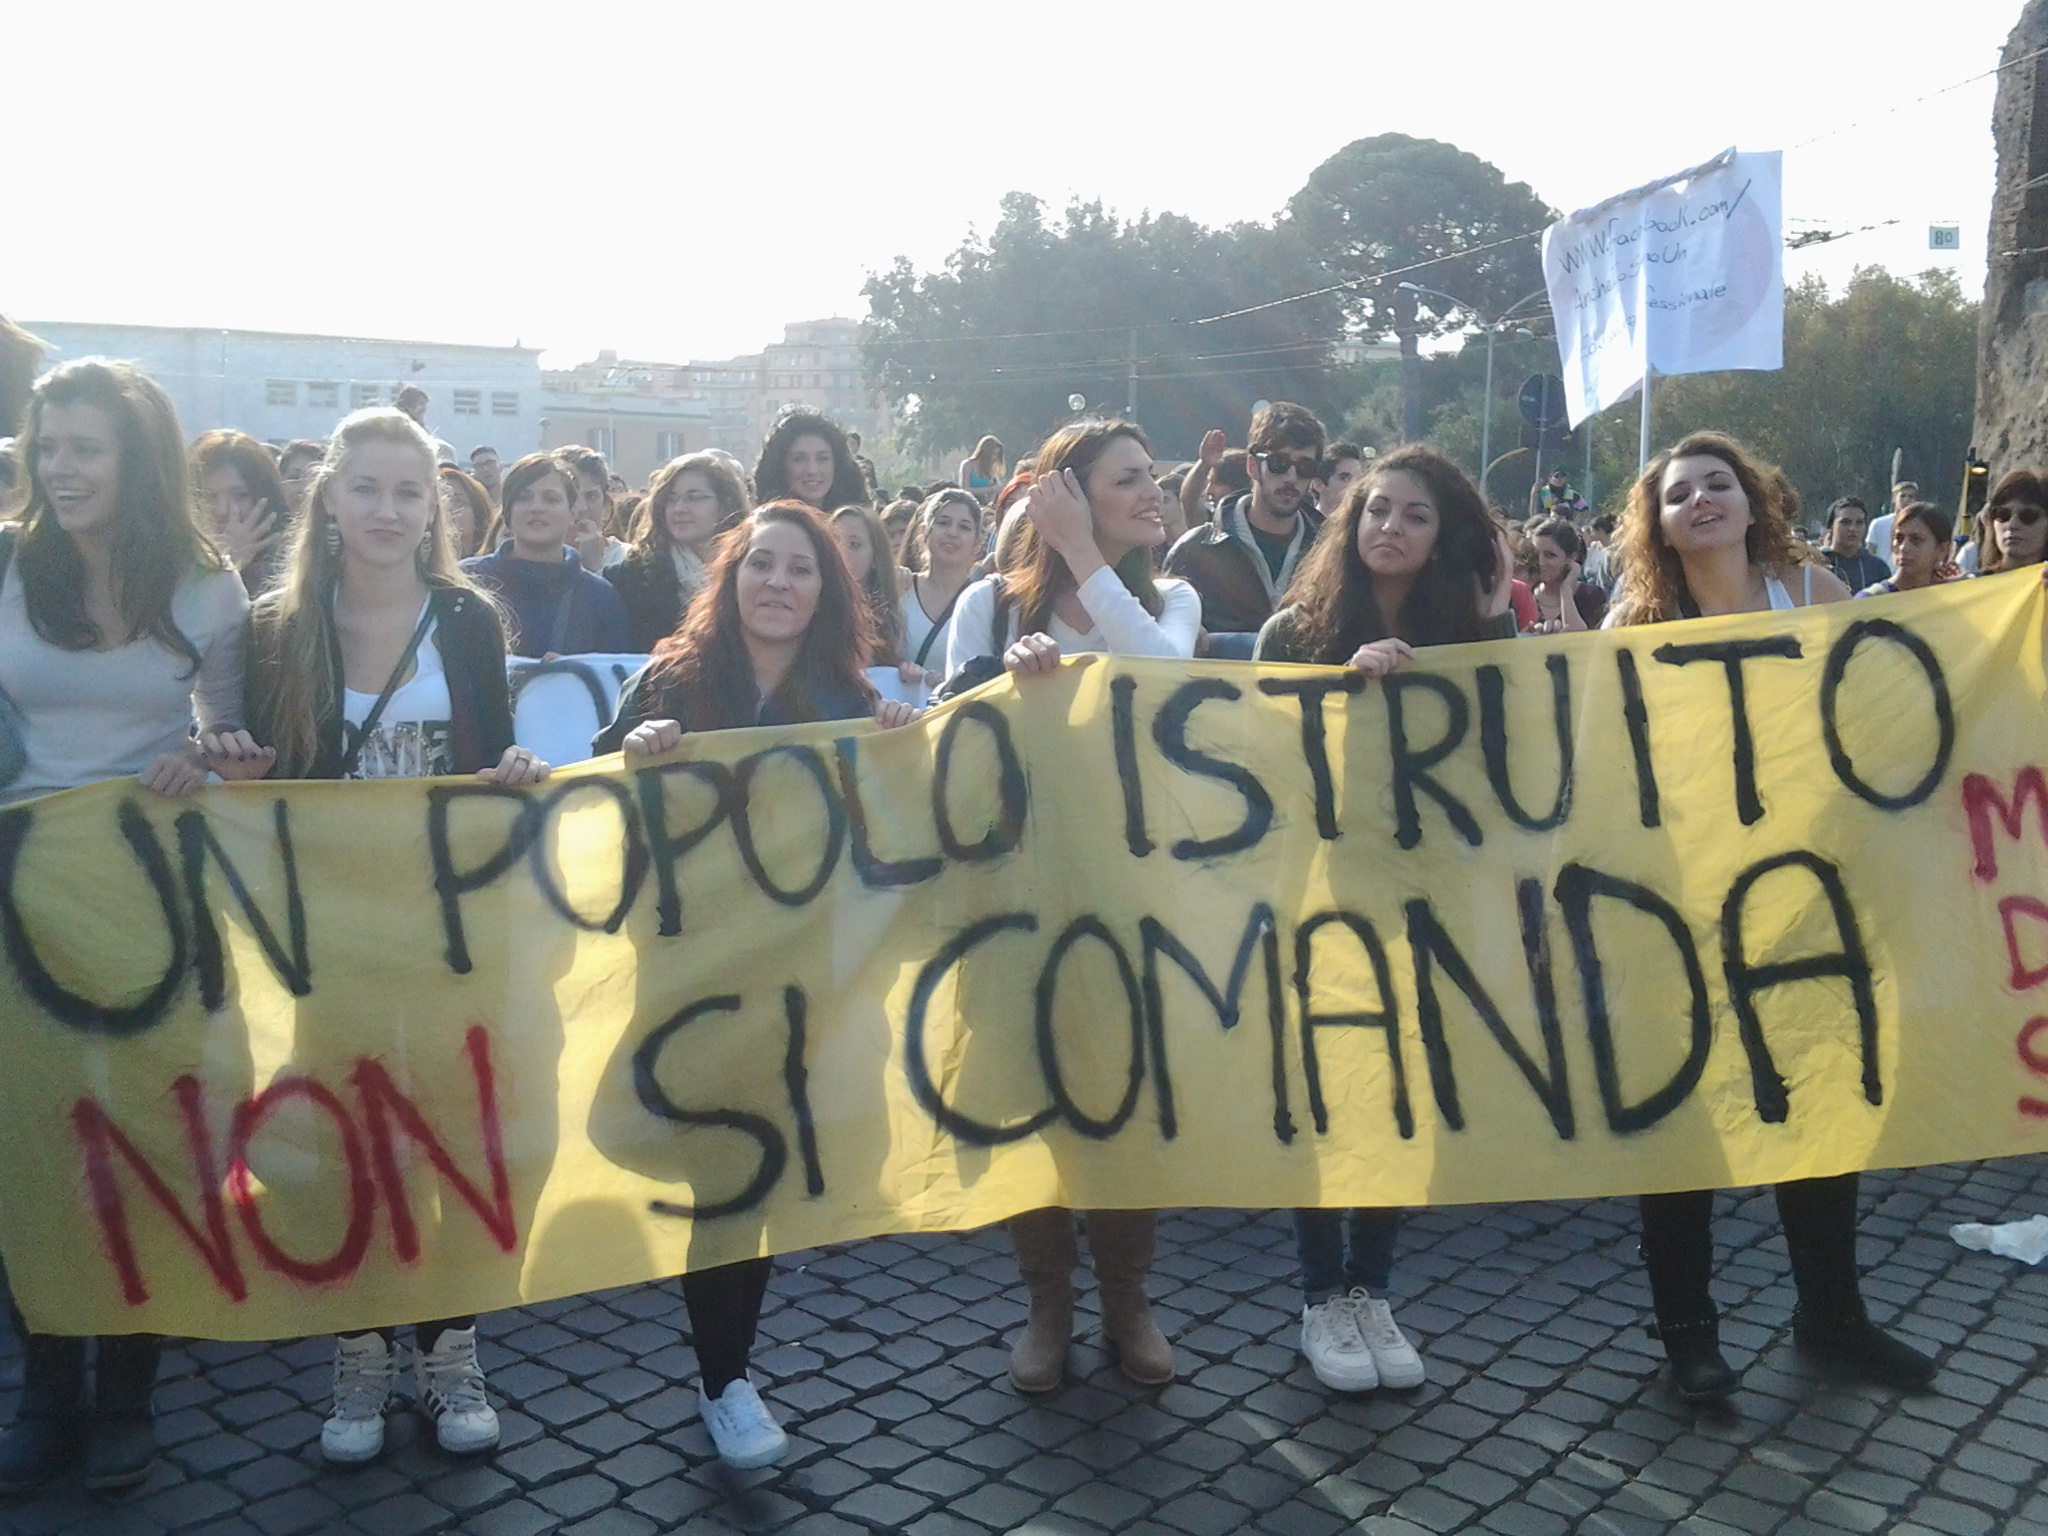 Post precedente: Gli Studenti in piazza Venerdì 17: le loro ragioni